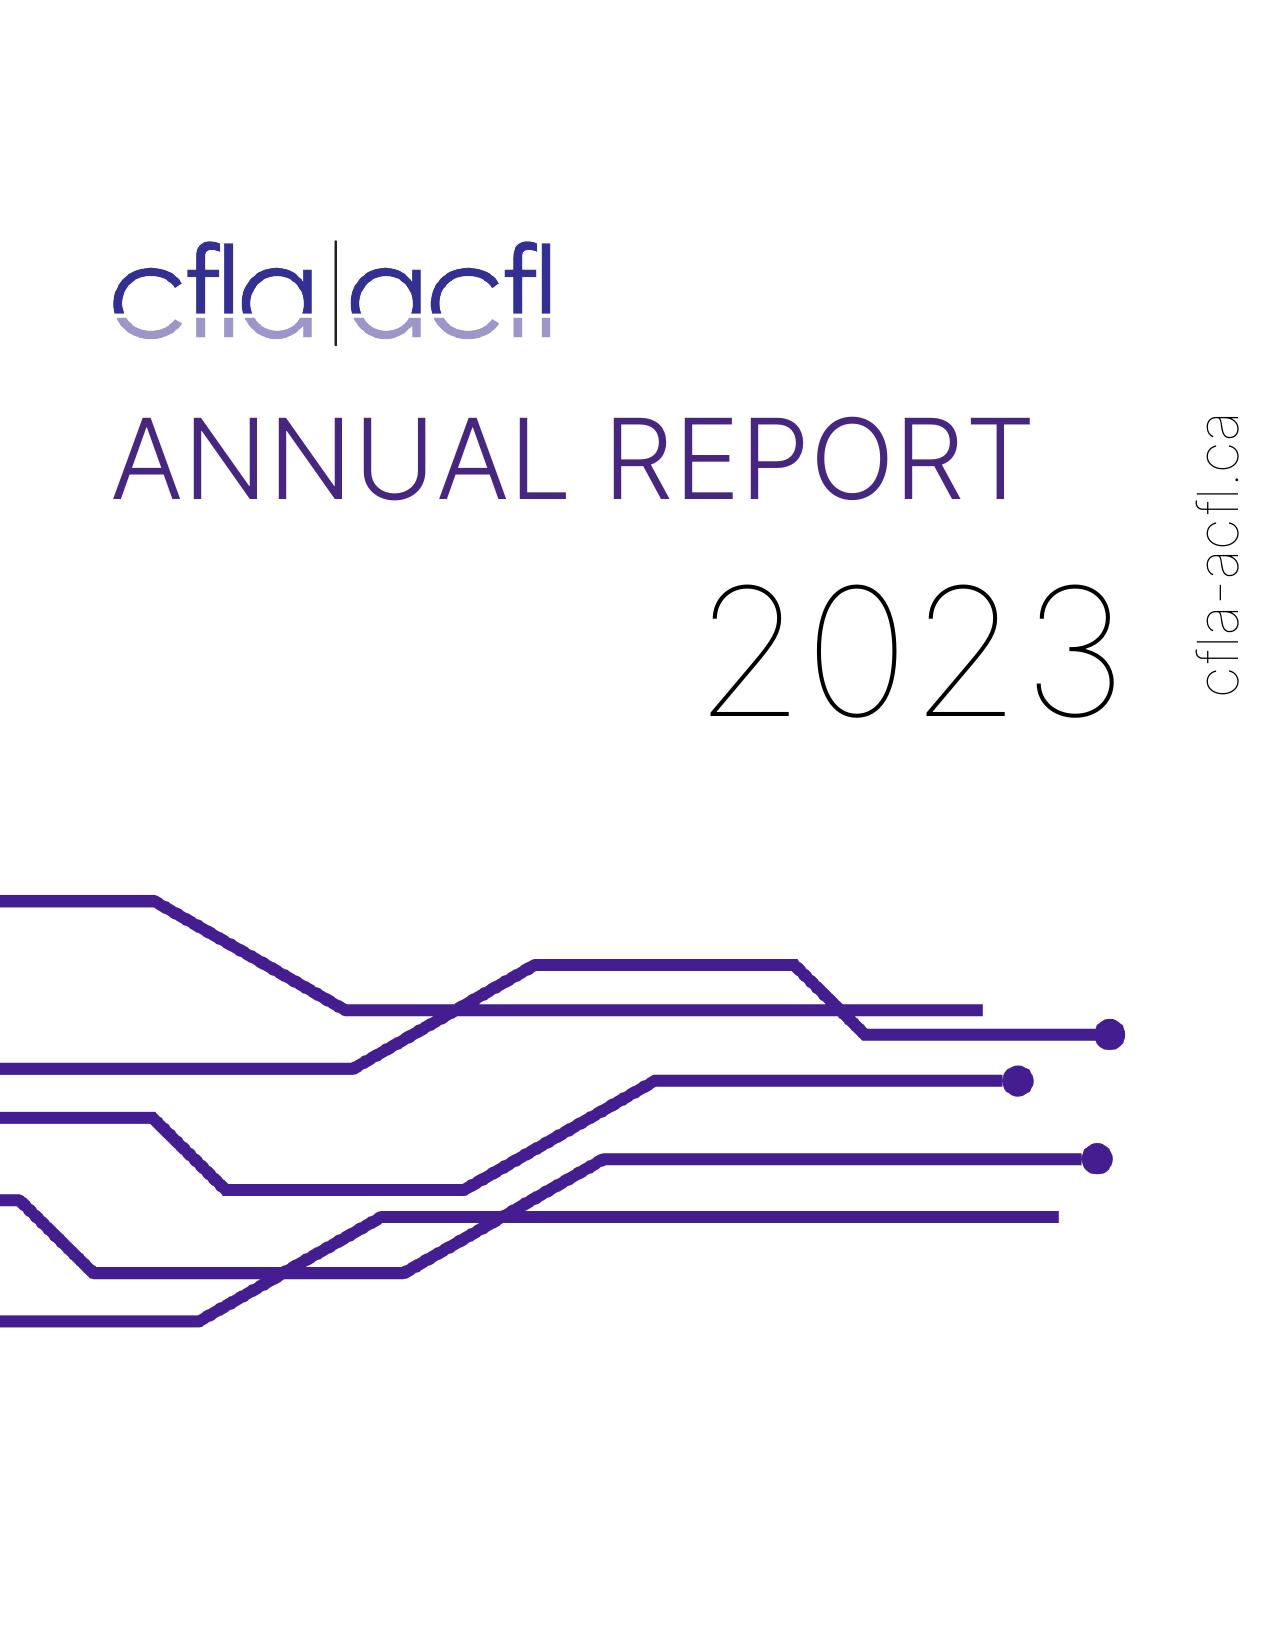 CAREERSINENERGY 2022 Annual Report